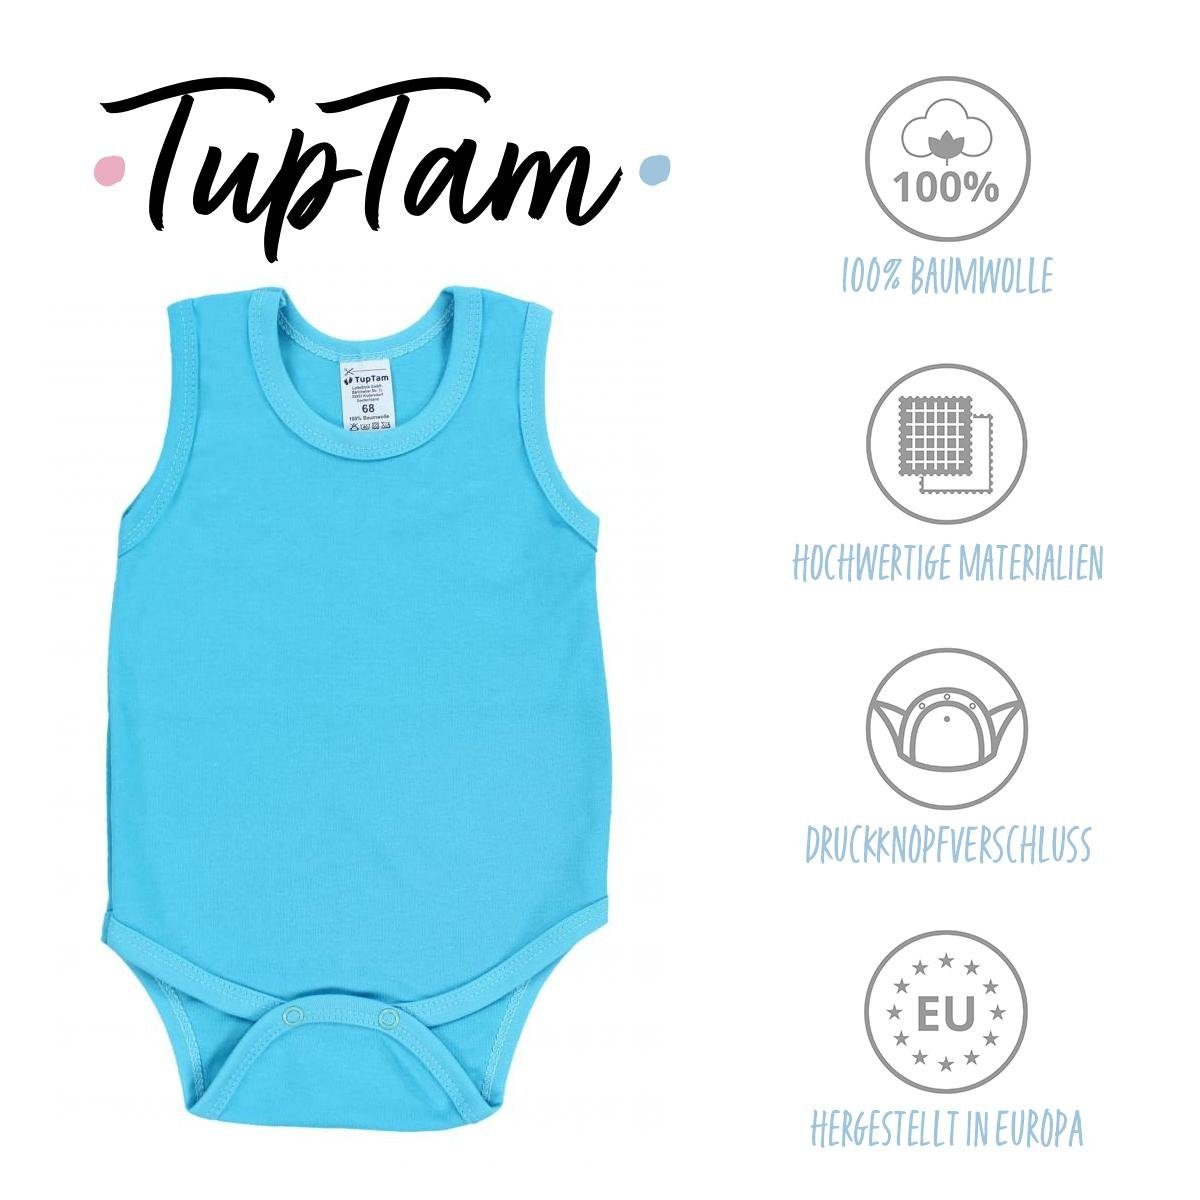 Unifarben TupTam Pack Farbenmix 2 Baby in TupTam Body Achselbody 5er Jungen